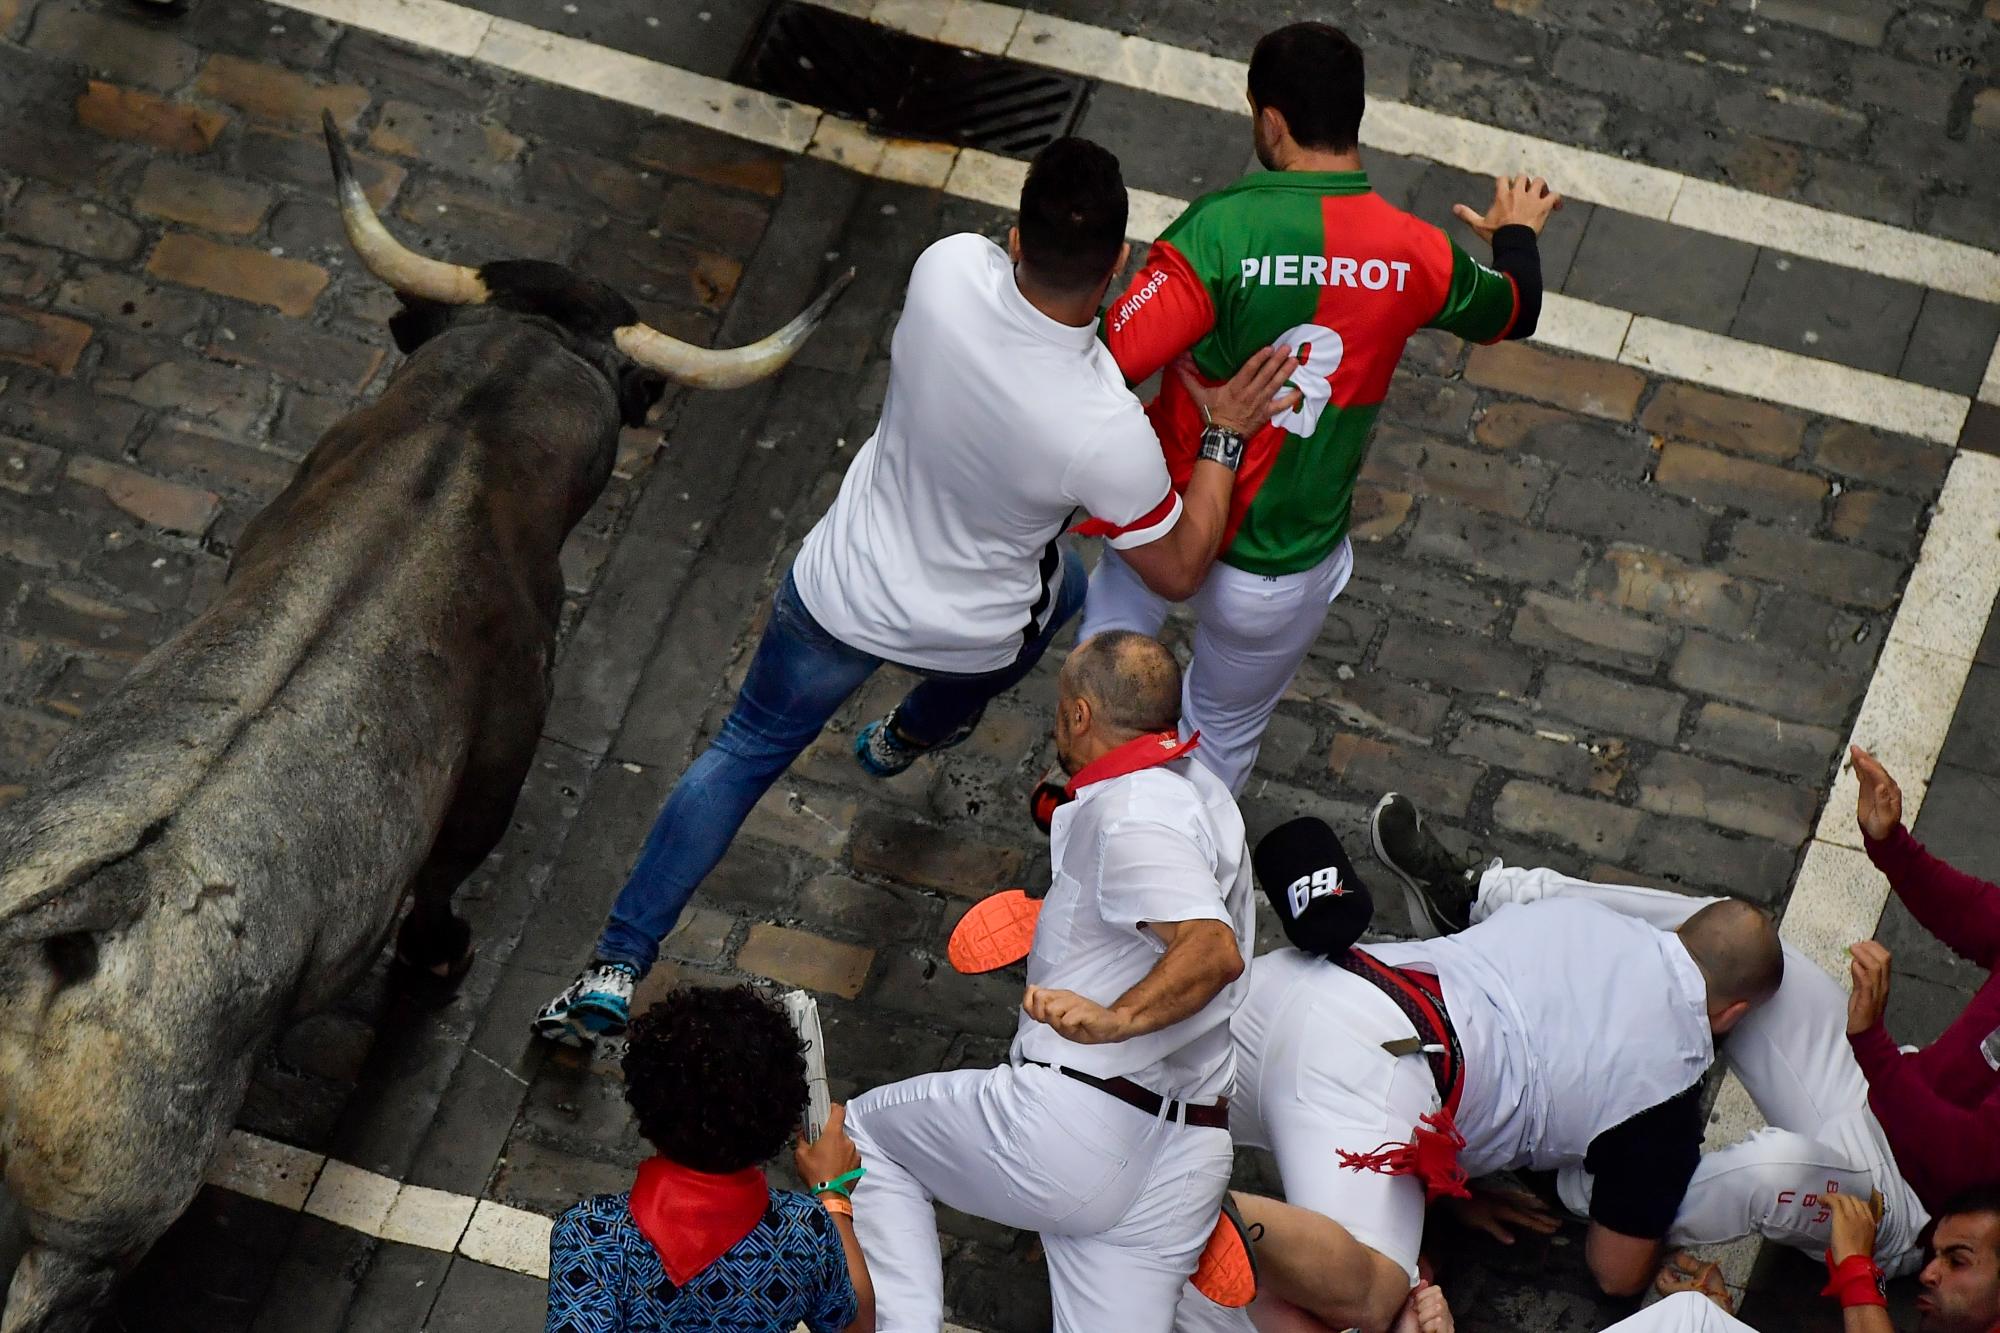 Los juerguistas corren al lado de los toros de toros durante la corrida de los toros en el Festival de San Fermín, en Pamplona, norte de España, el martes 9 de julio de 2019. Los juerguistas de todo el mundo acuden a Pamplona cada año para participar en los ocho días del corrida de toros. 